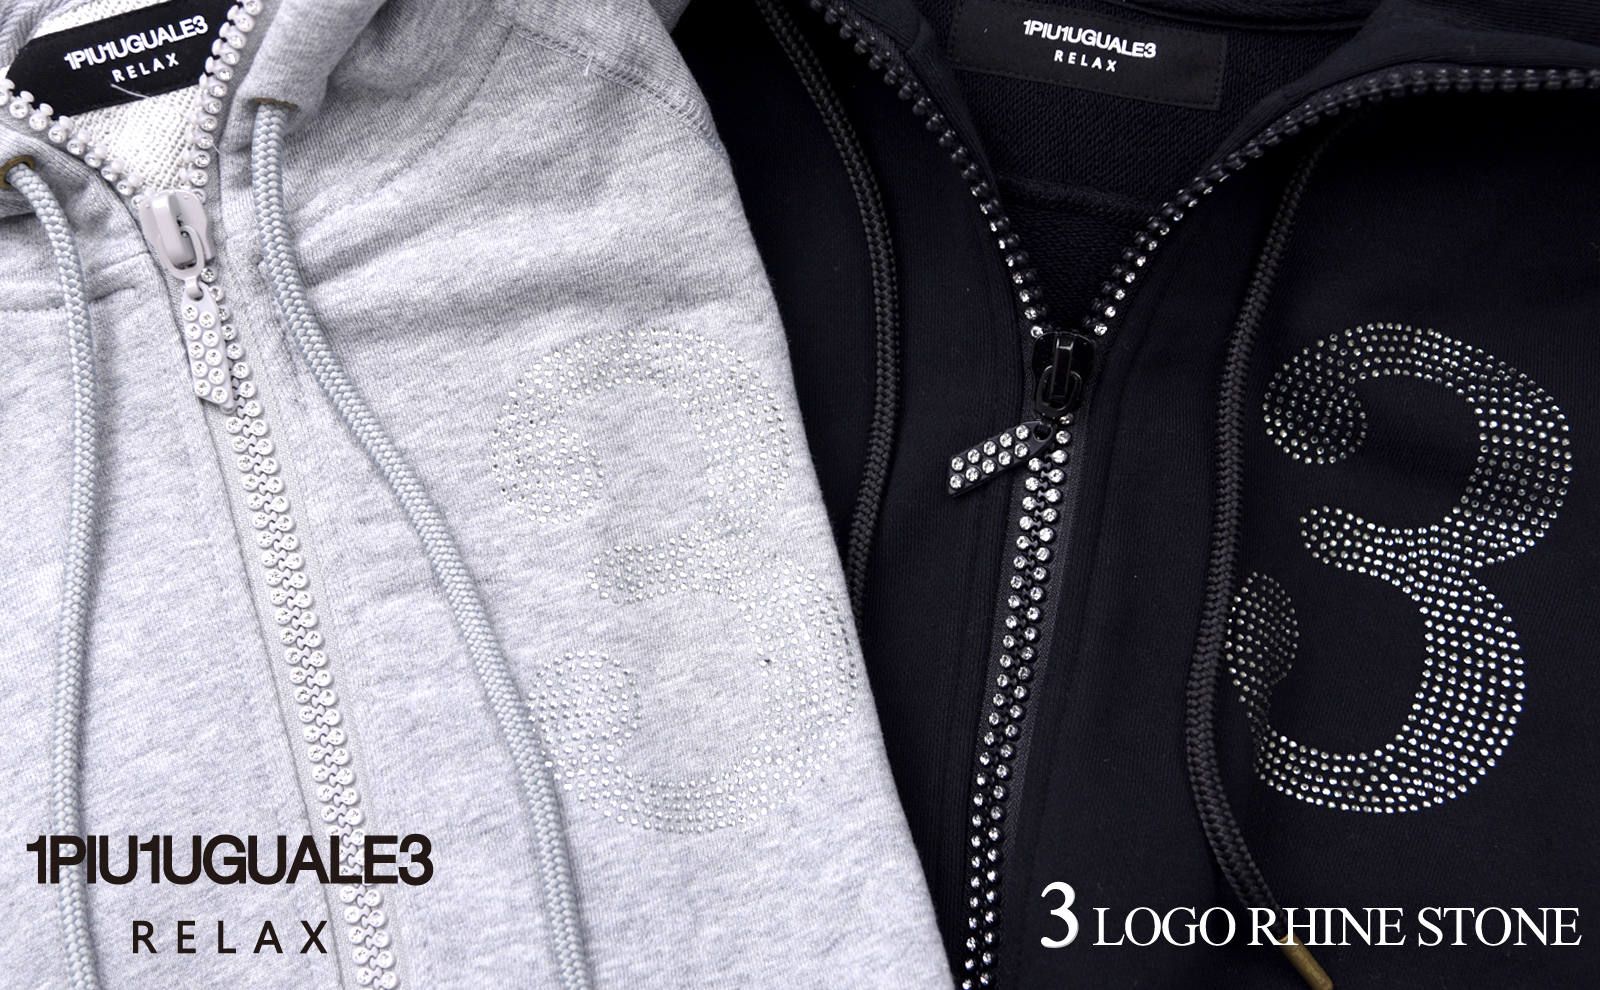 1PIU1UGUALE3 RELAX】 ブランドを象徴する数字の「3」をラインストーン